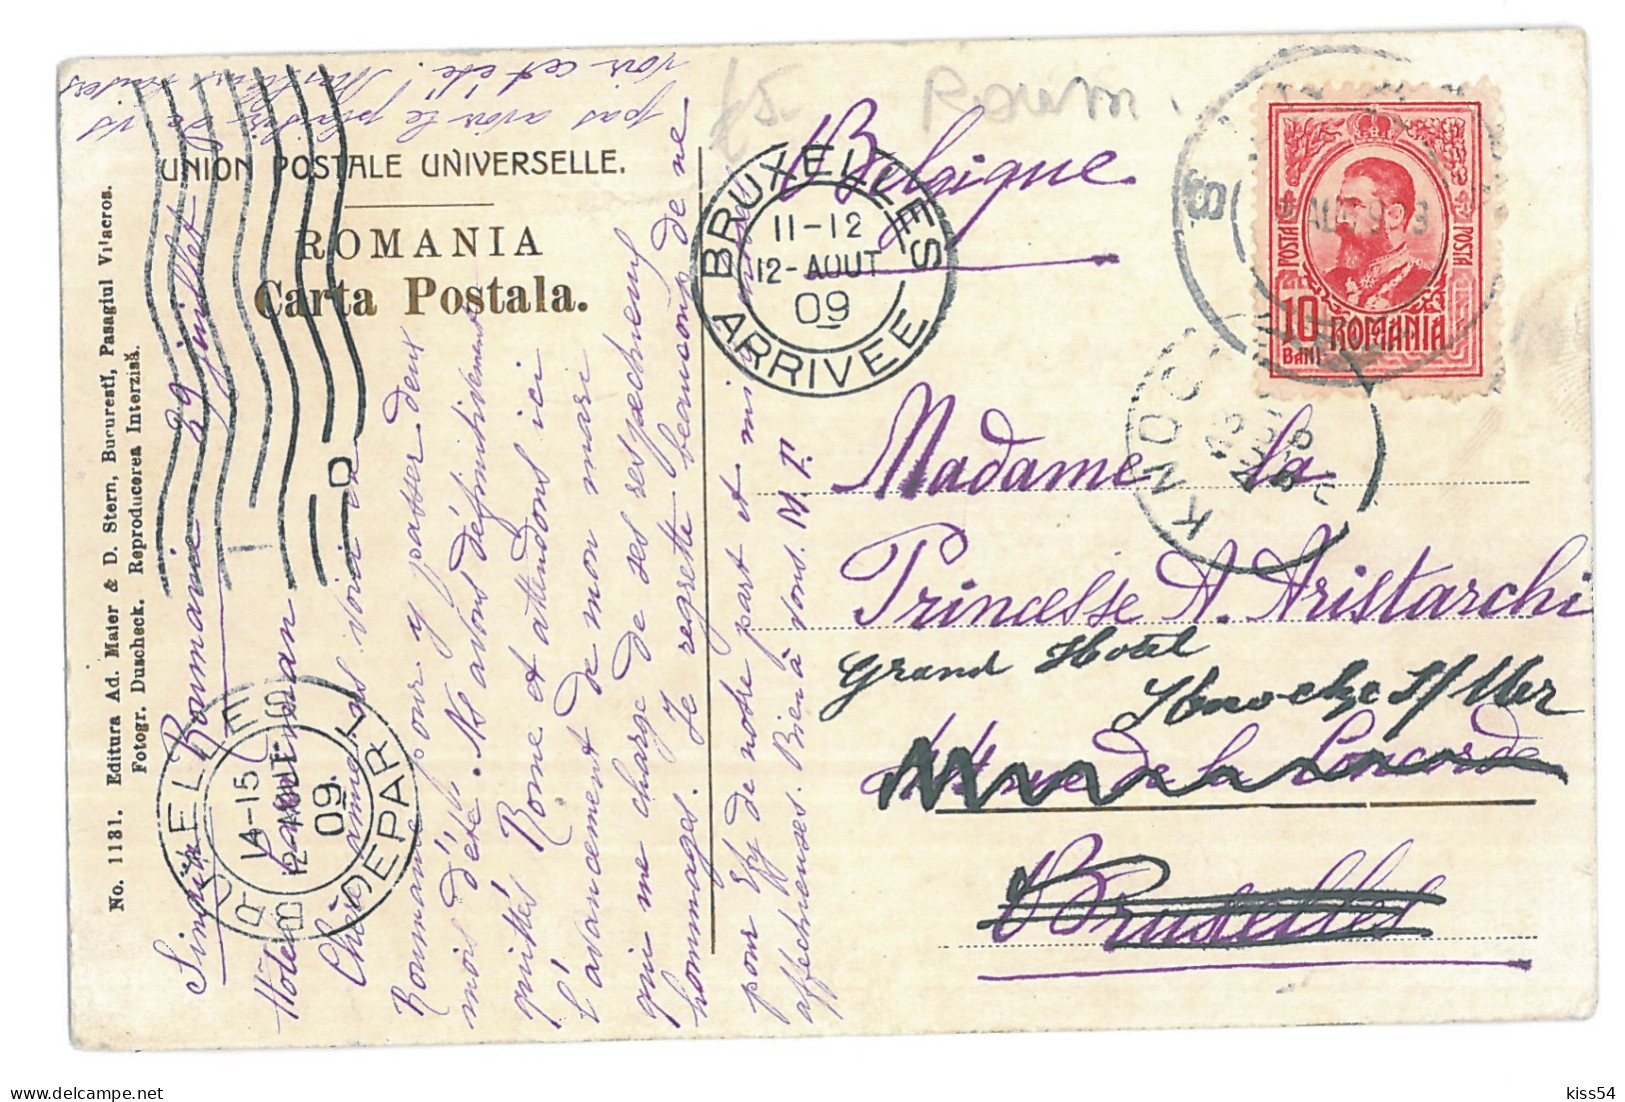 RO 52 - 15795 SINAIA, Panorama, Romania - Old Postcard - Used - 1909 - Rumänien